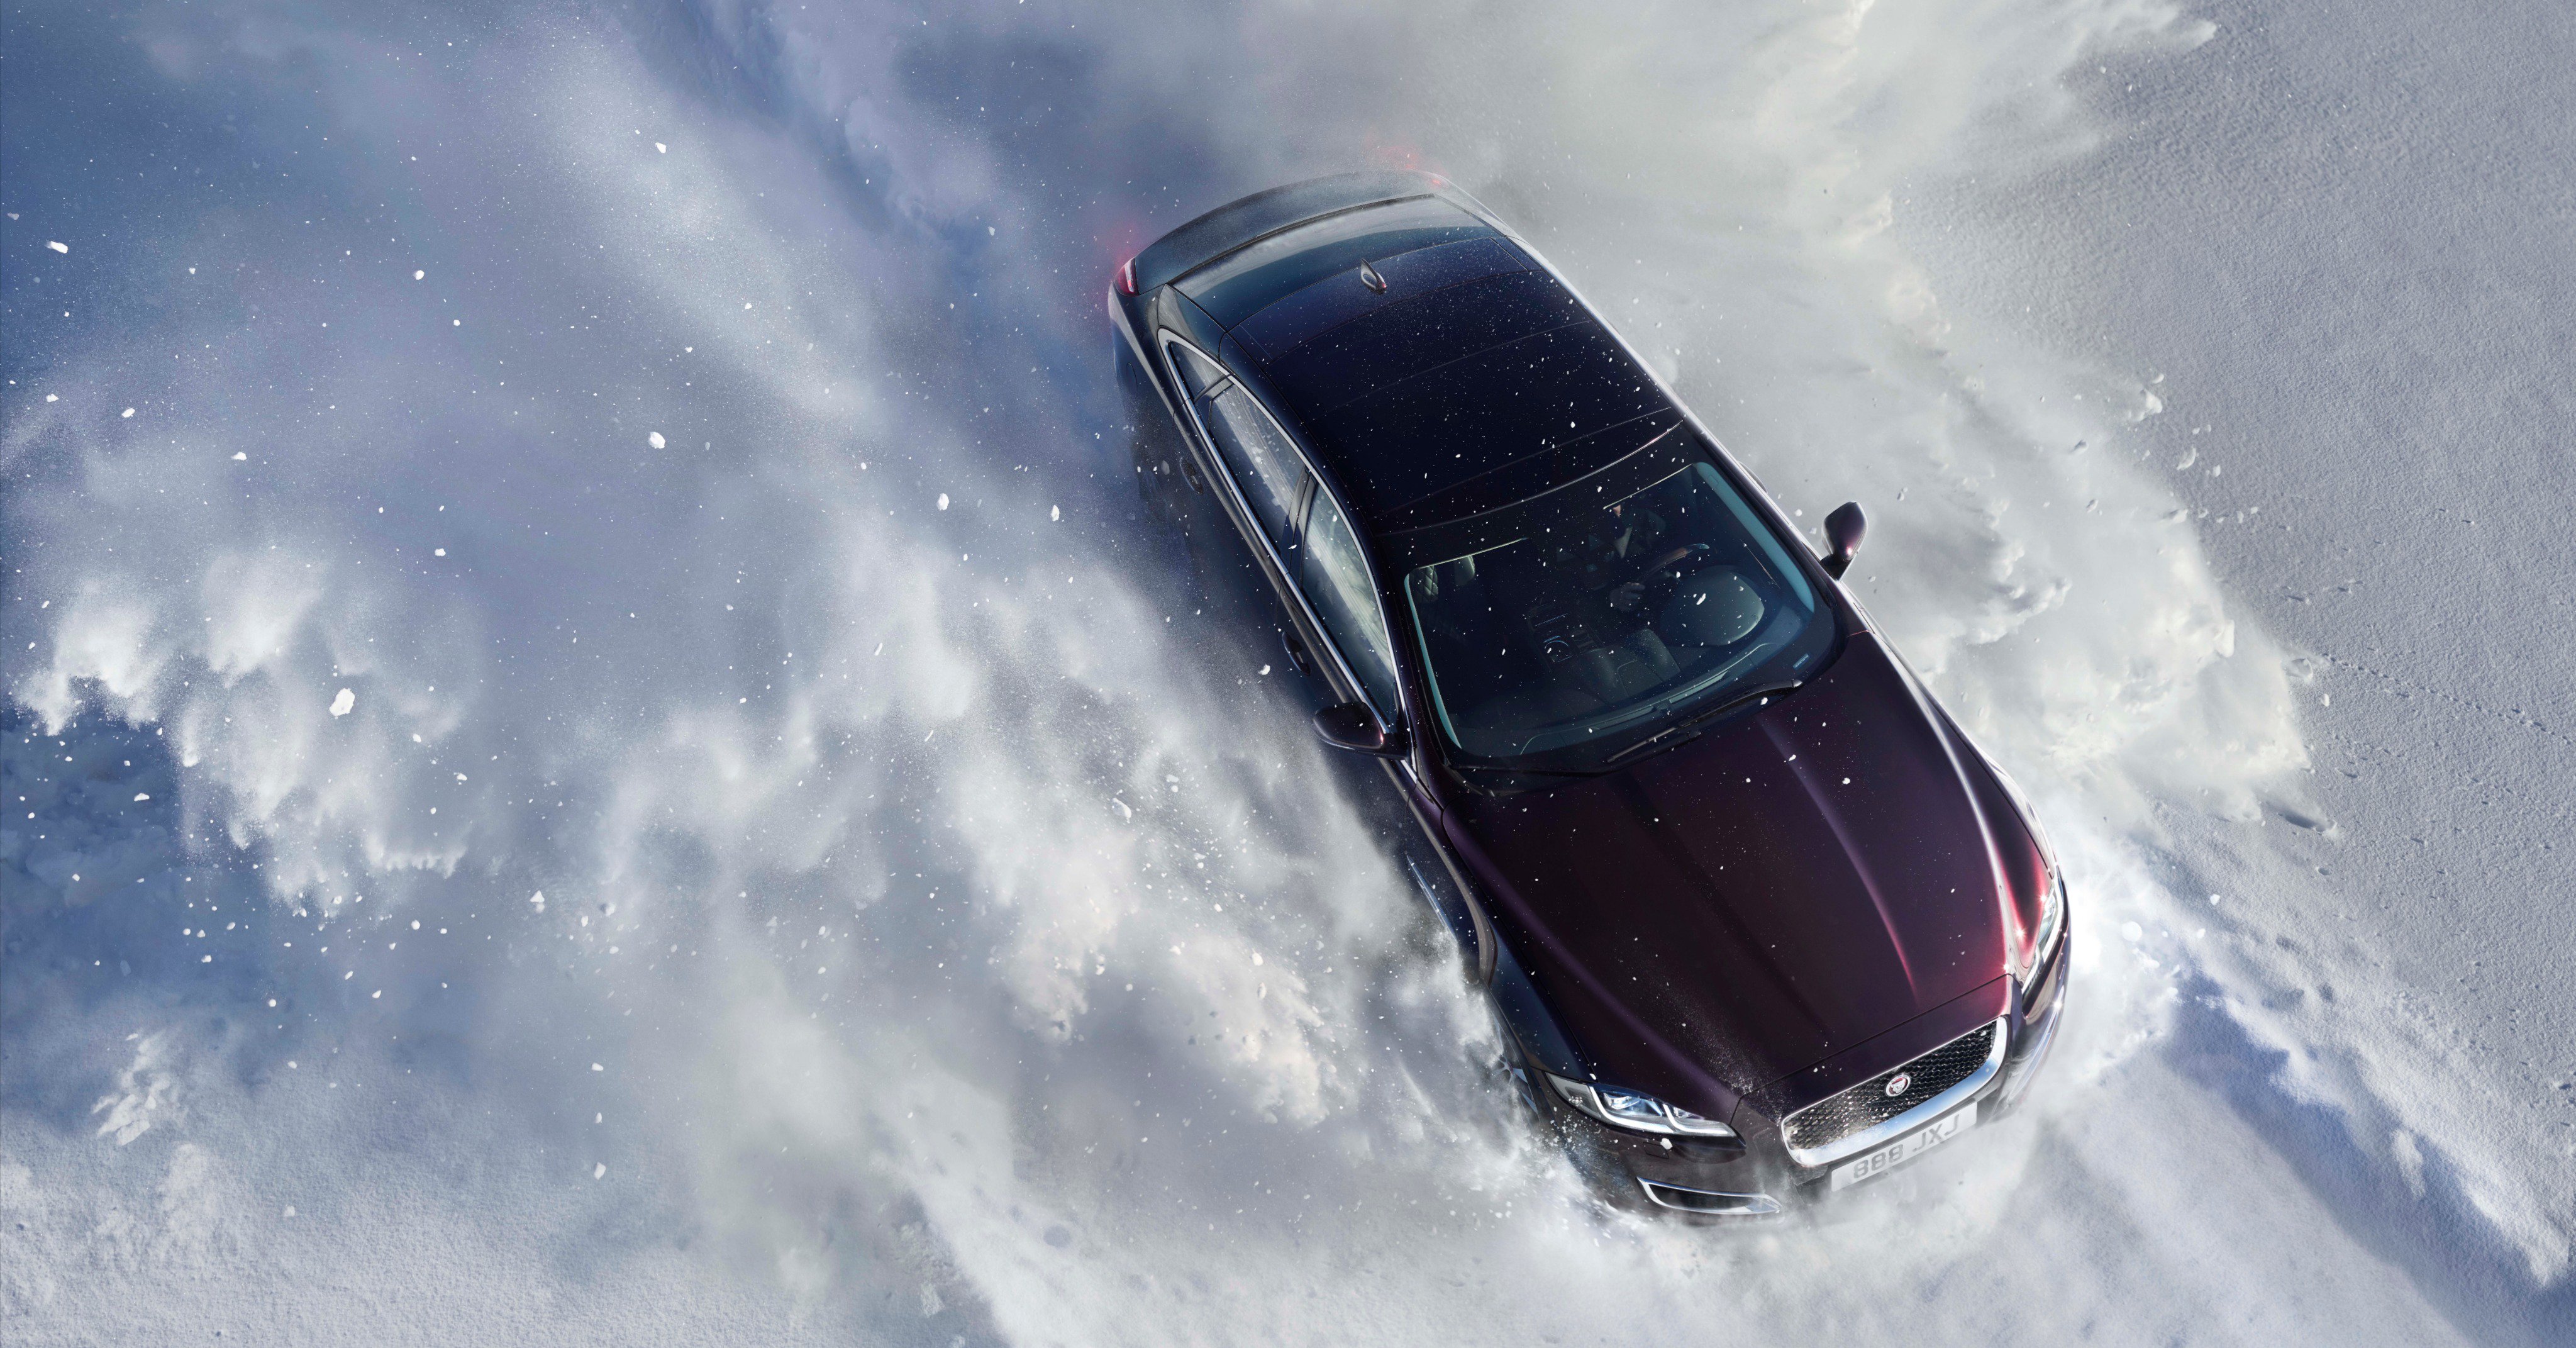 Jaguar se sprema ove godine predstaviti nasljednika svog luksuznog sedana XJ. Međutim, ova generacija će biti posve električan automobil, bez benzinskih, dizelskih ili hibridnih opcija. Time će Jaguar započeti novu eru u svojoj povijesti.